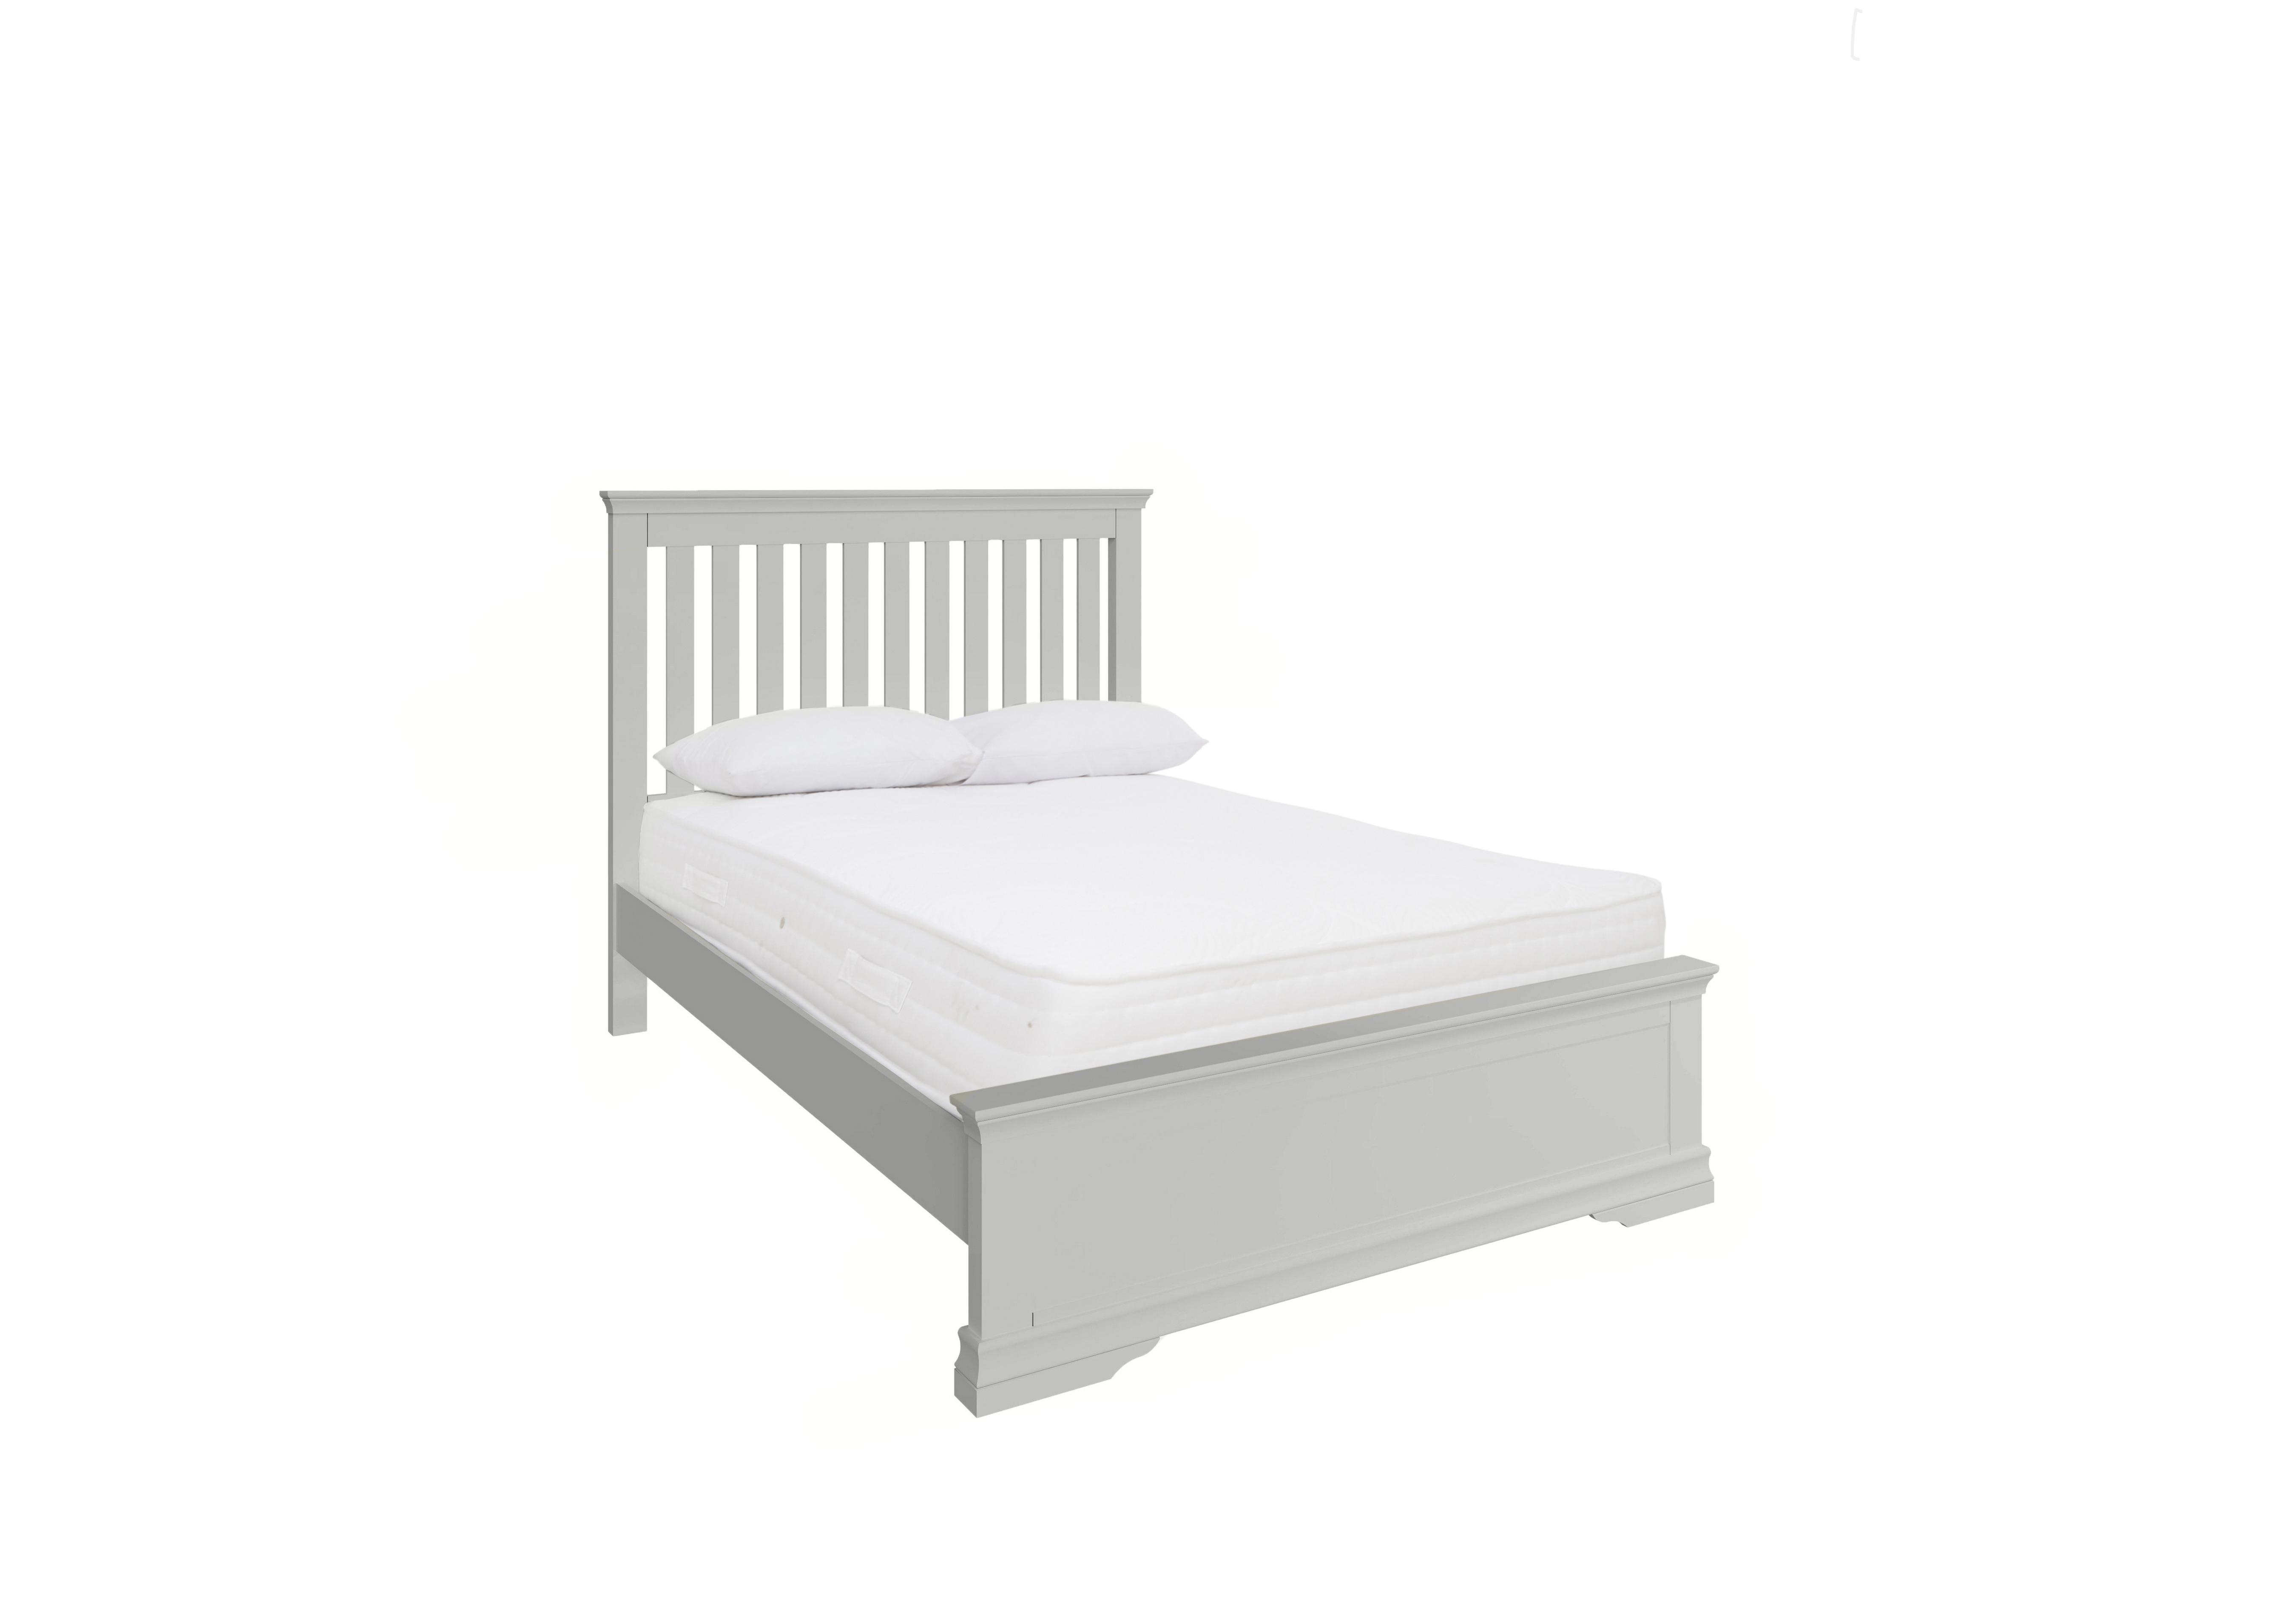 Tiverton Standard Bedframe in Dove Grey on Furniture Village